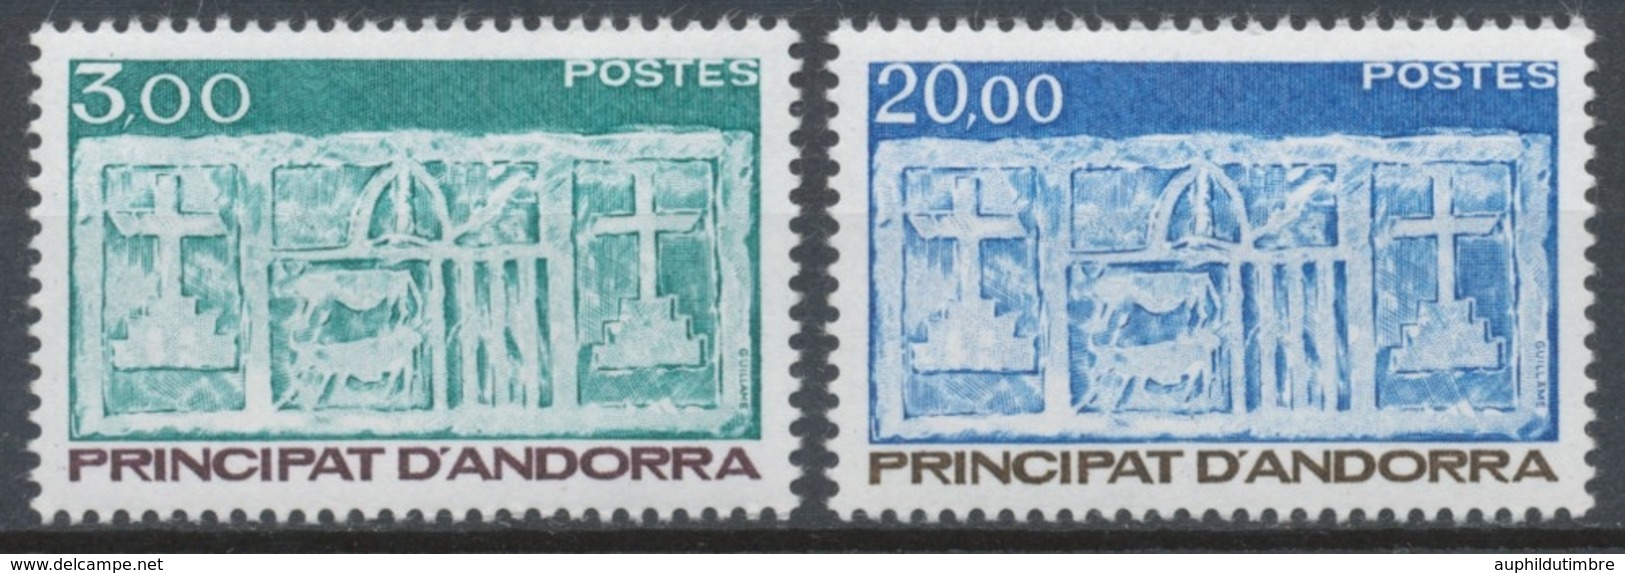 Andorre FR Série N°335 + N°336 NEUFS** ZA336S - Unused Stamps